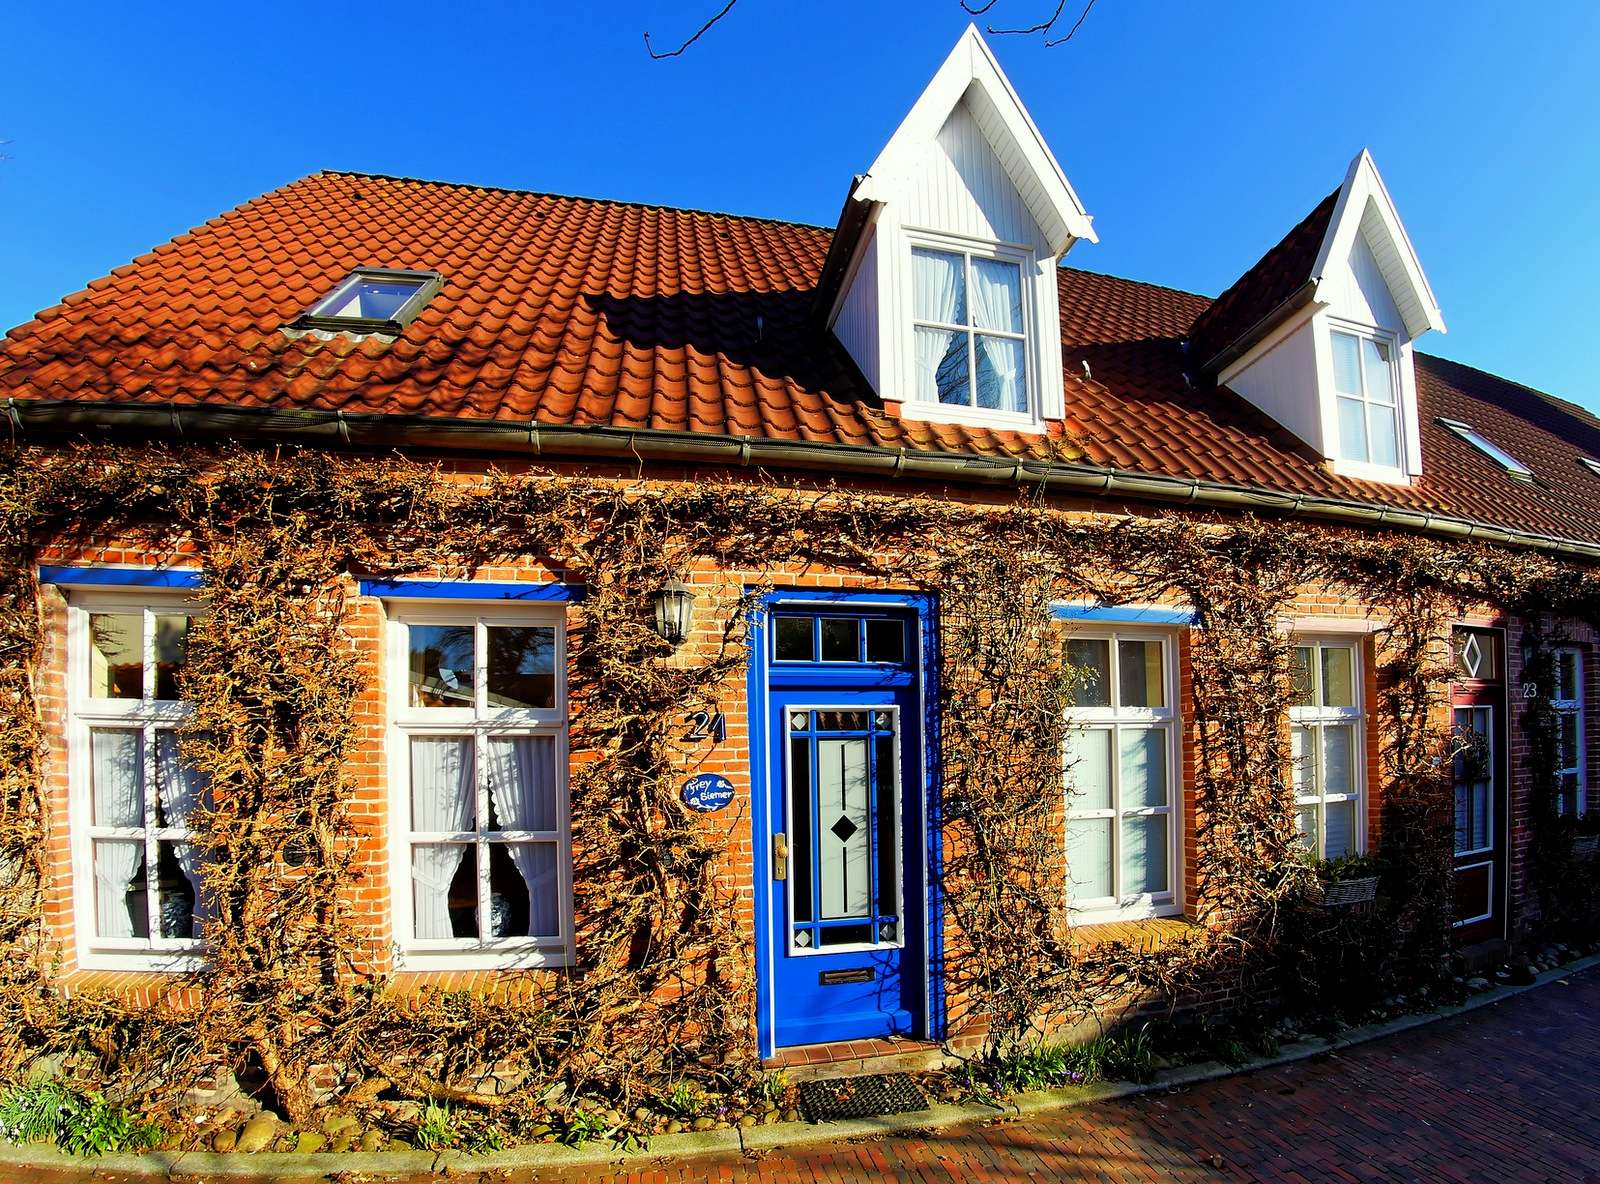 Едноетажна многофамилна къща (Ostfriesland) онлайн пъзел